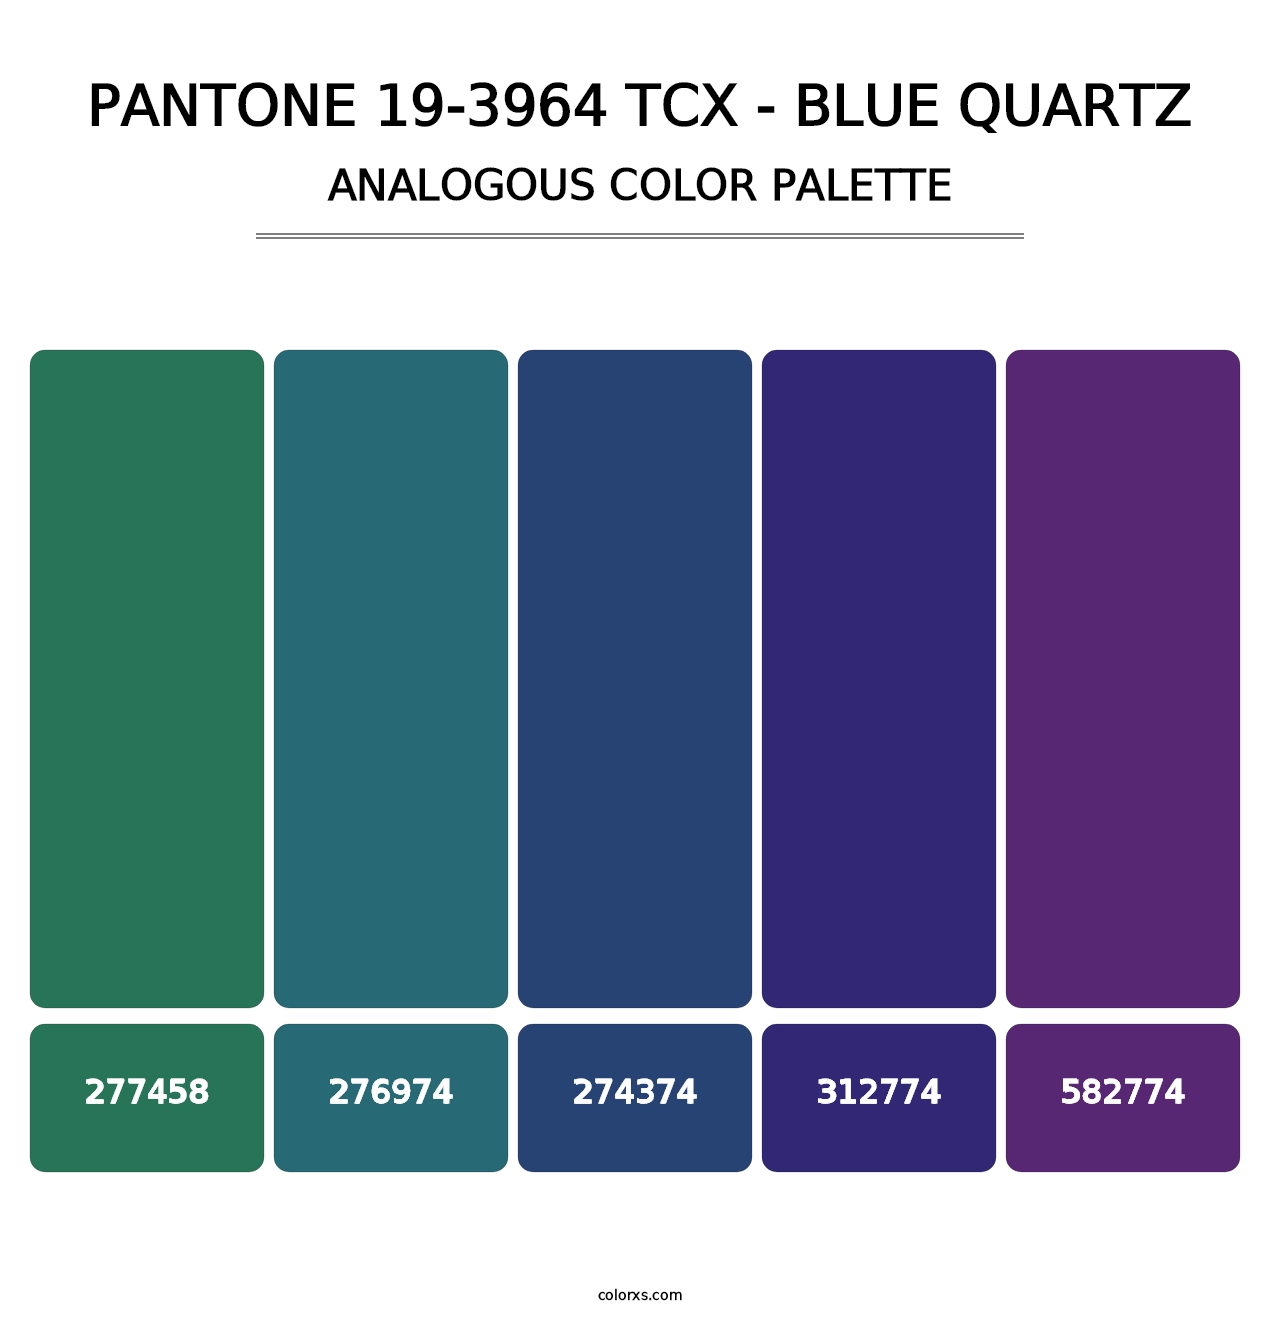 PANTONE 19-3964 TCX - Blue Quartz - Analogous Color Palette